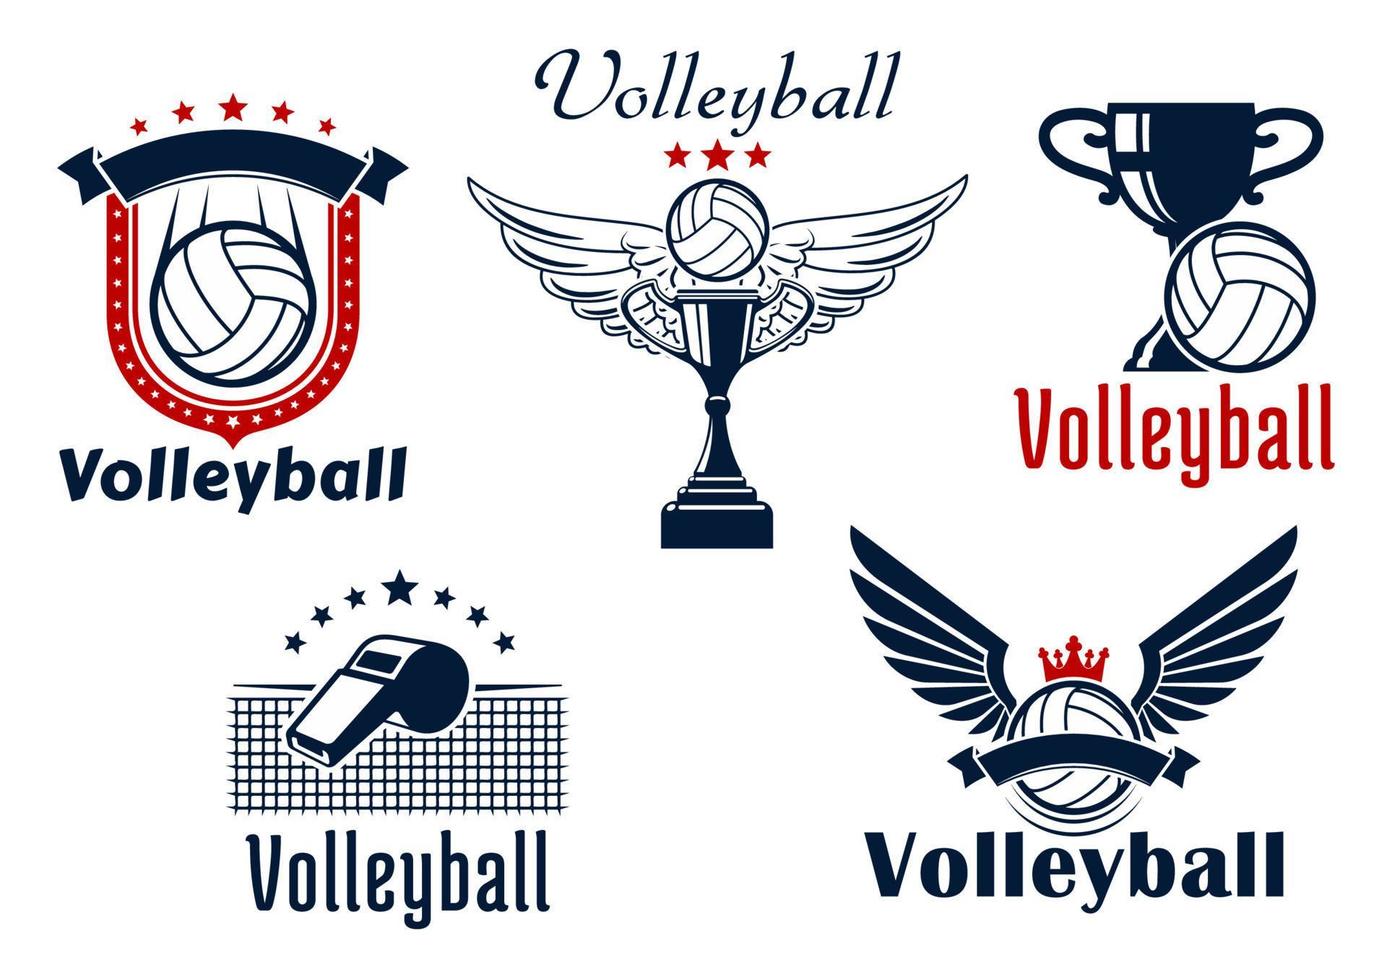 pallavolo gioco emblemi con sport elementi vettore